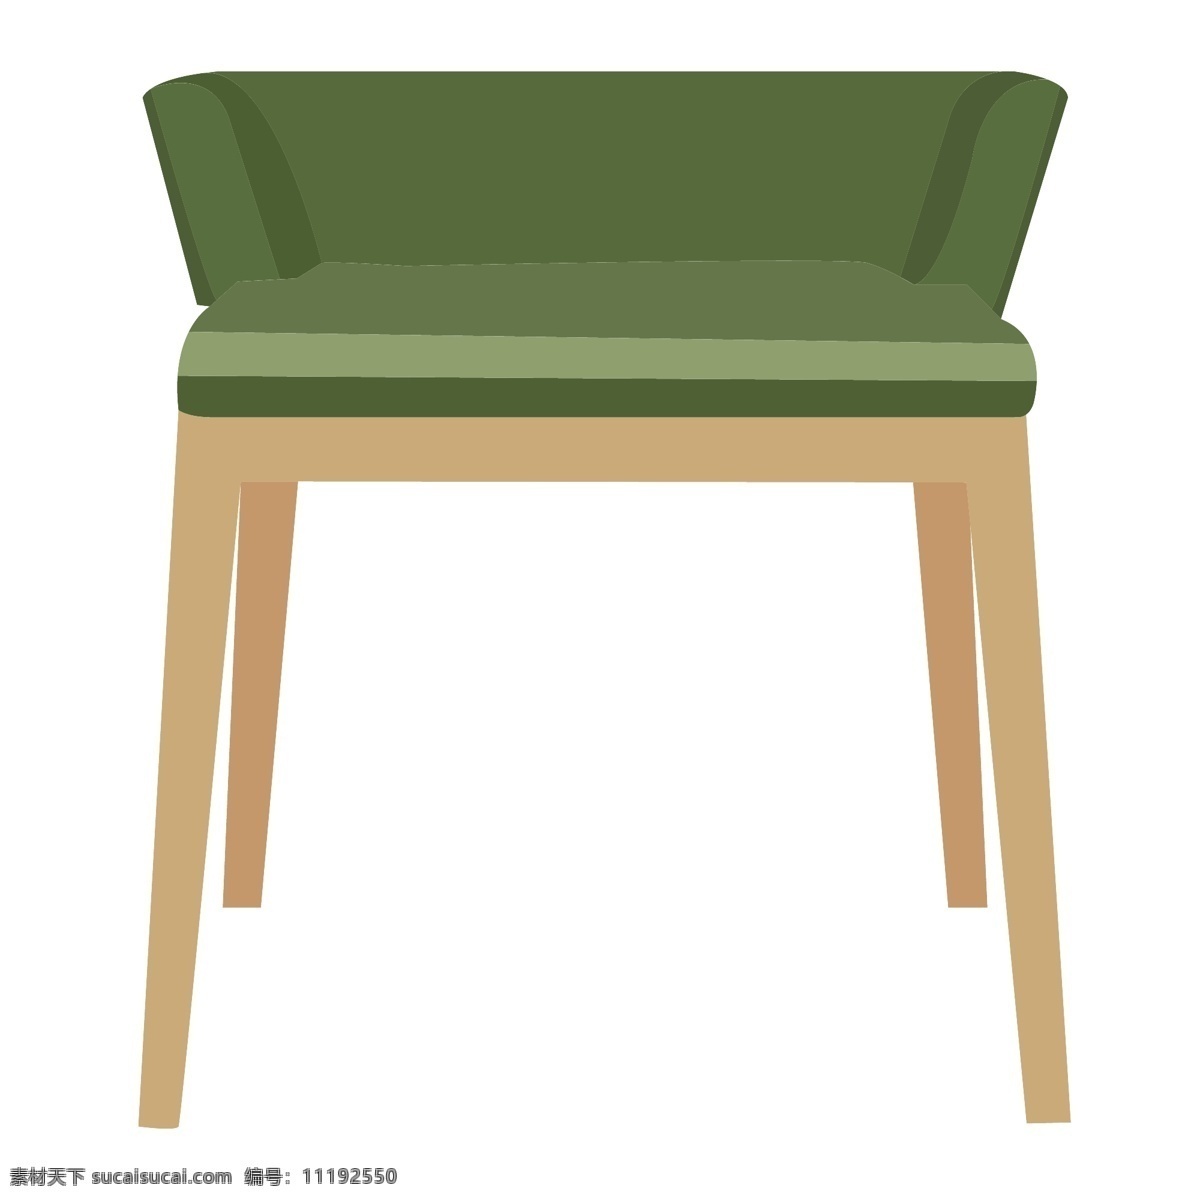 绿色 椅子 装饰 插画 绿色的椅子 木头椅子 漂亮的椅子 椅子装饰 椅子插画 立体椅子 精美椅子